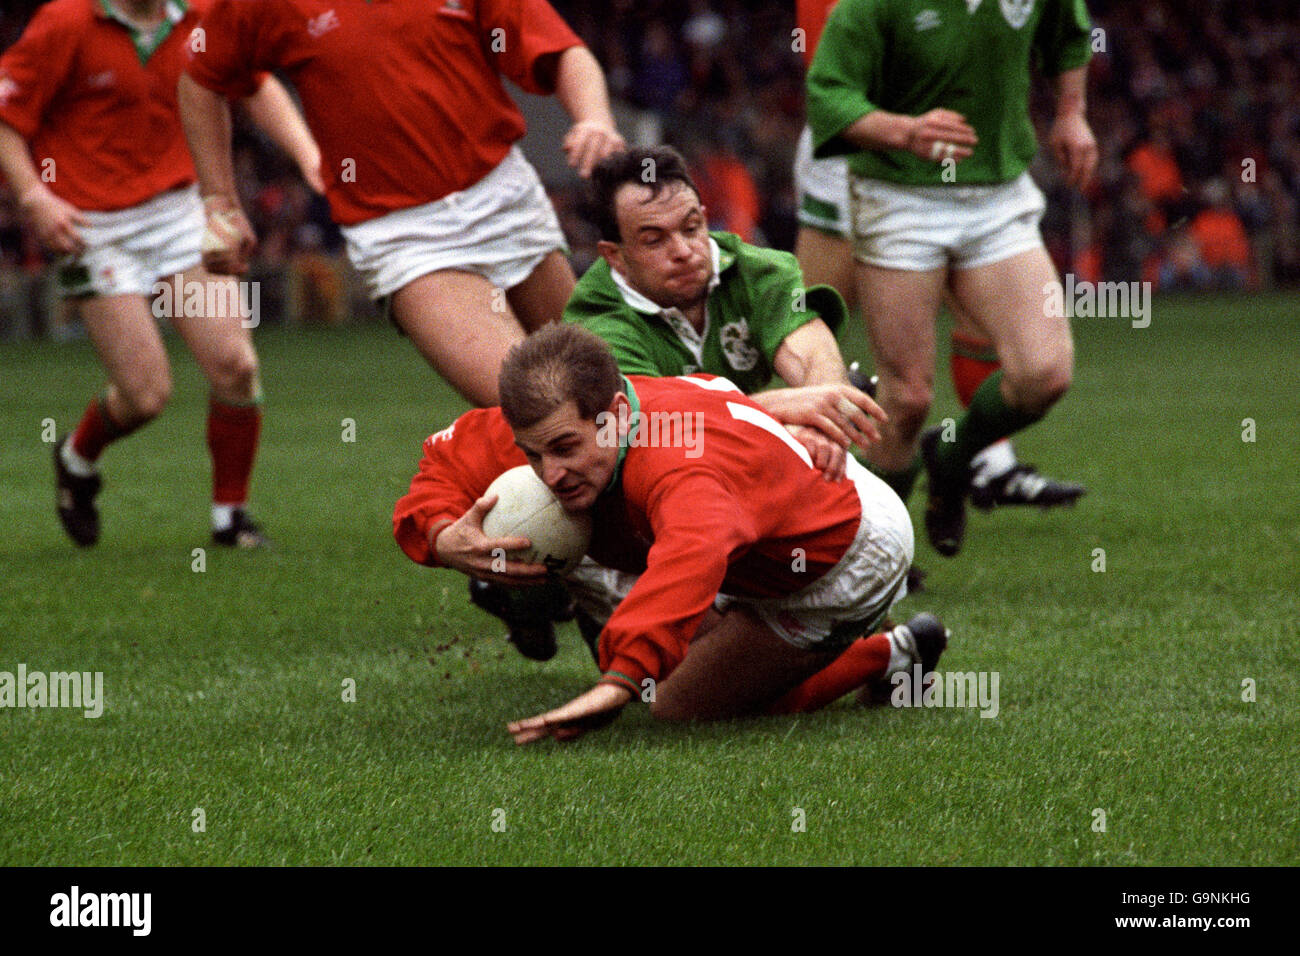 Rugby Union - Championnat des cinq nations - pays de Galles / Irlande - Stade national.Mike Rayer, pays de Galles, est descendu à quelques centimètres de la ligne d'essai irlandaise Banque D'Images